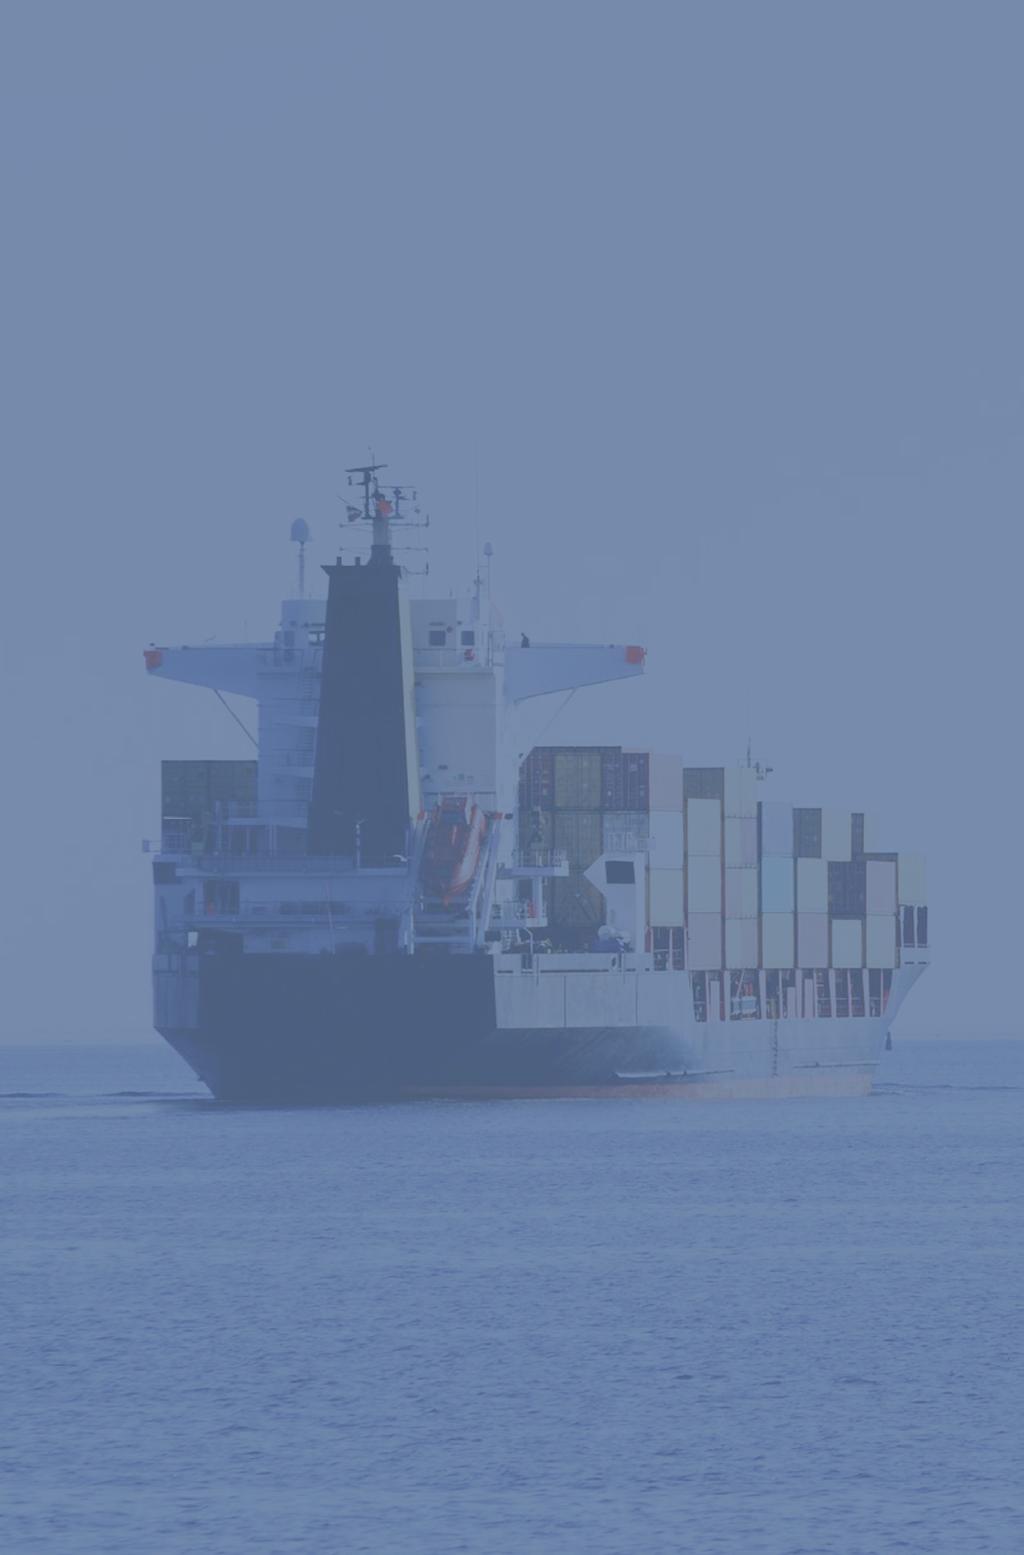 10 AQUAVIÁRIO MOVIMENTAÇÃO PORTUÁRIA Movimentação total de carga segundo a natureza da carga 2015: 1,0 bilhão de toneladas no total 2014: 968,9 milhões de toneladas no total Aumento de 4,0% em